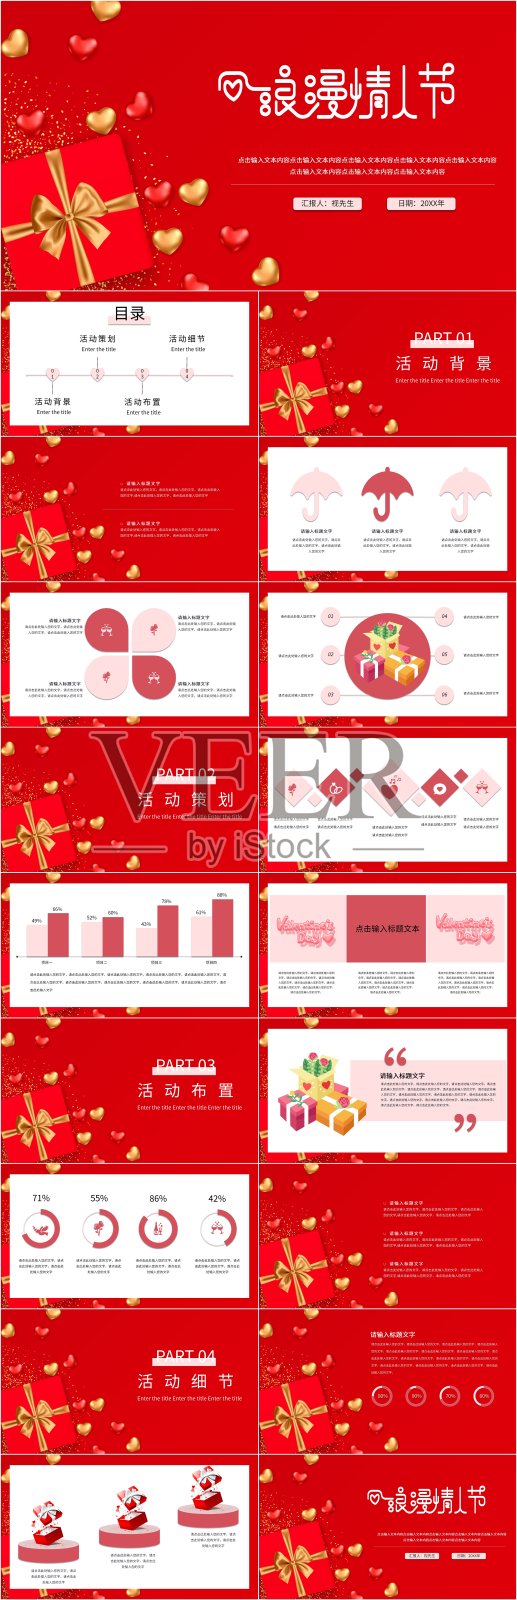 红色214情人节营销活动PPT设计模板素材